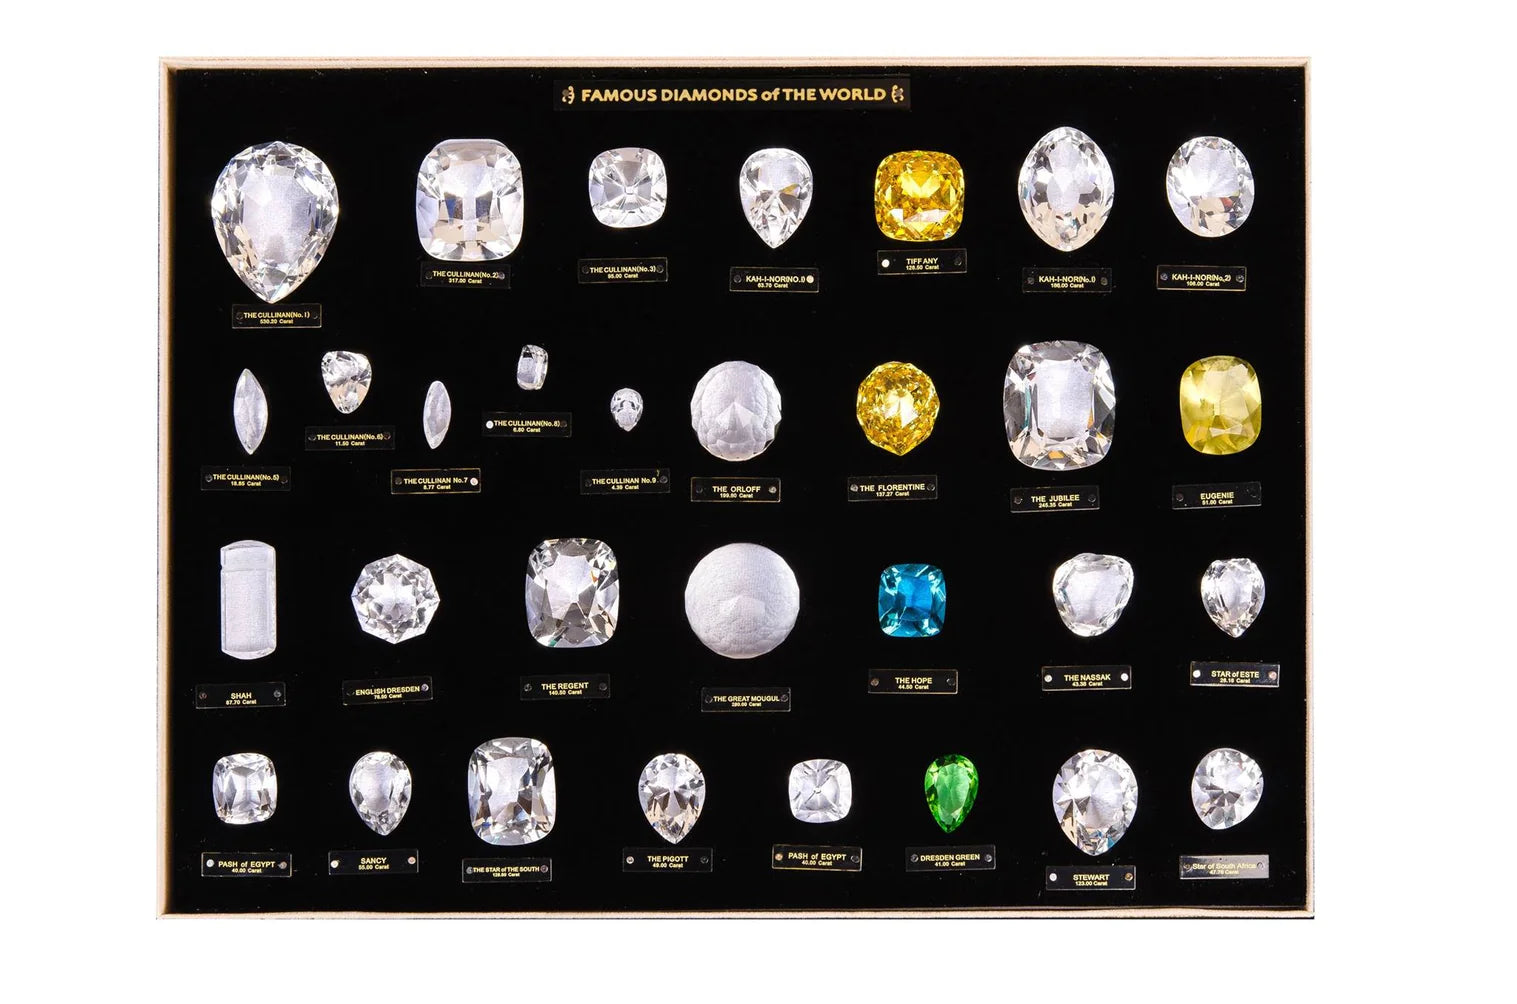 Ekskluzywna kolekcja replików słynnych diamentów na świecie: słynne diamenty świata